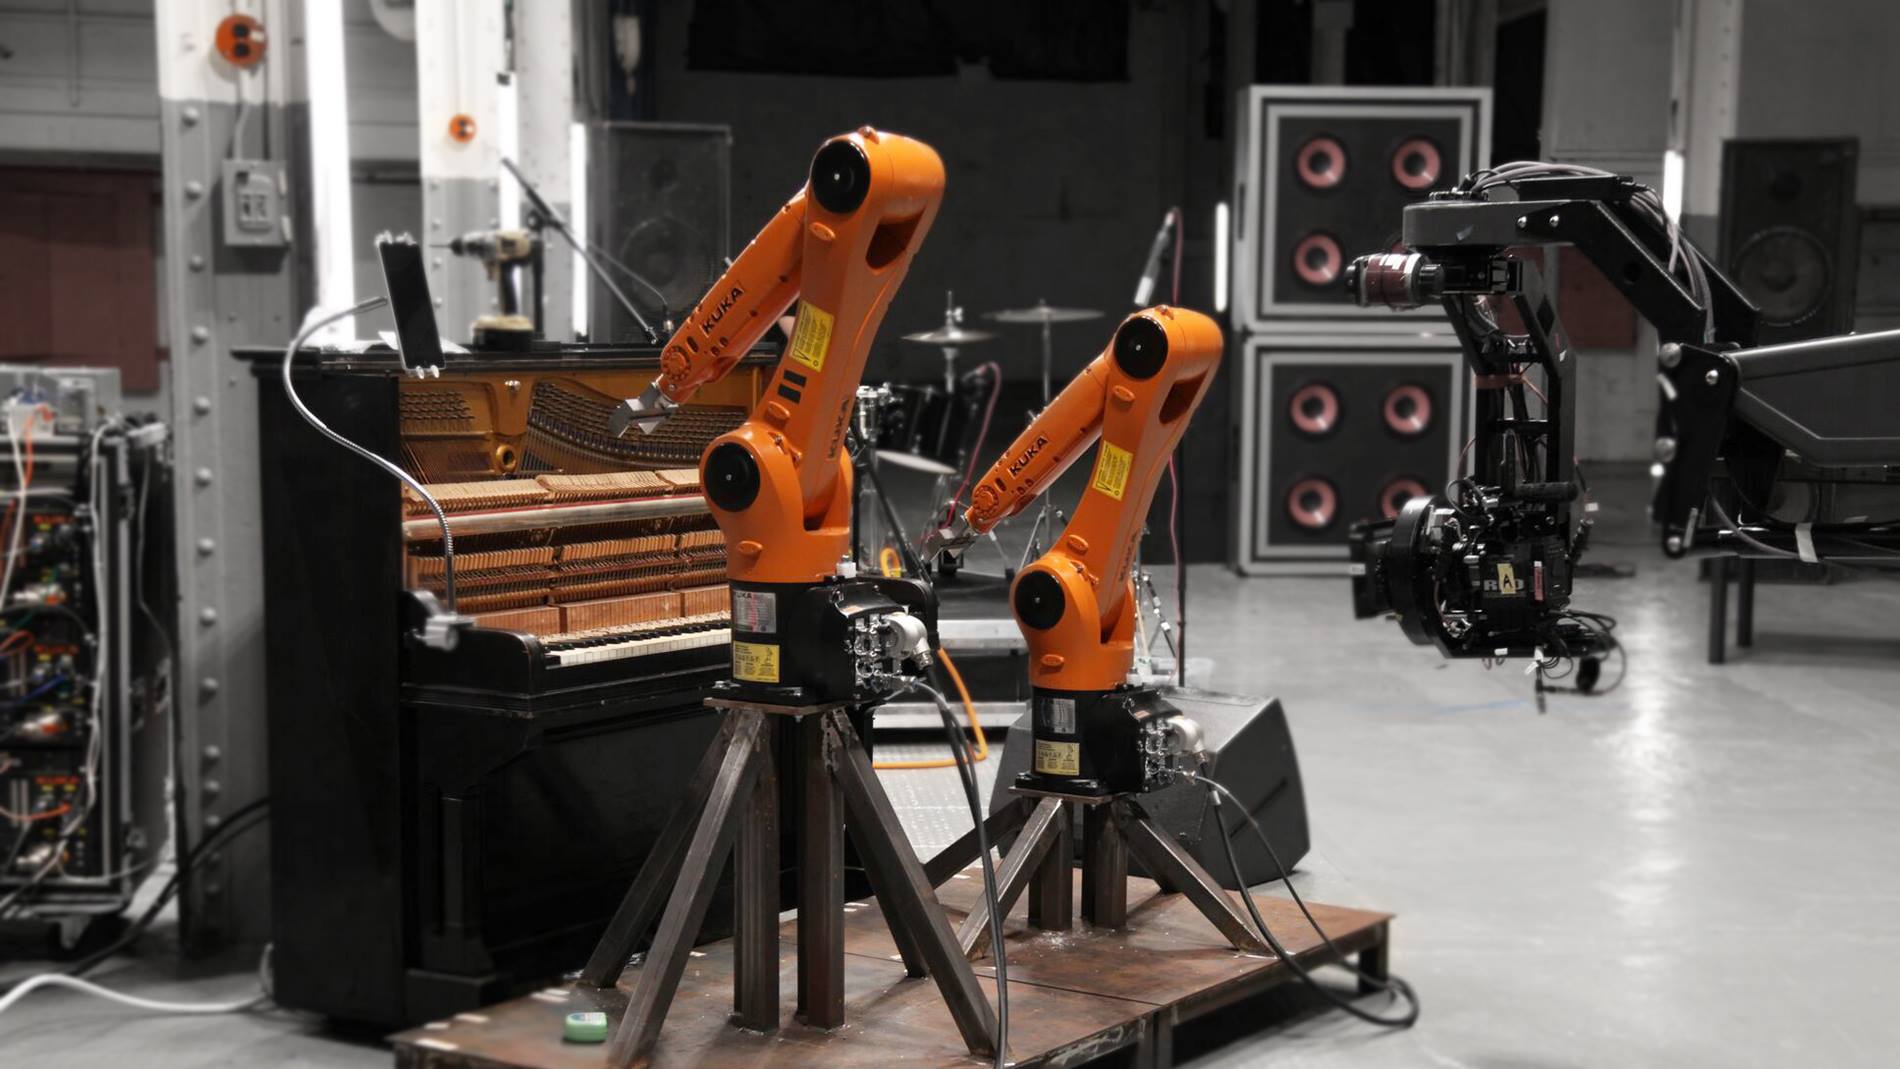 Zwei KUKA Roboter spielen am Piano in Nigel Stanfords Musikvideo zu Automatica.